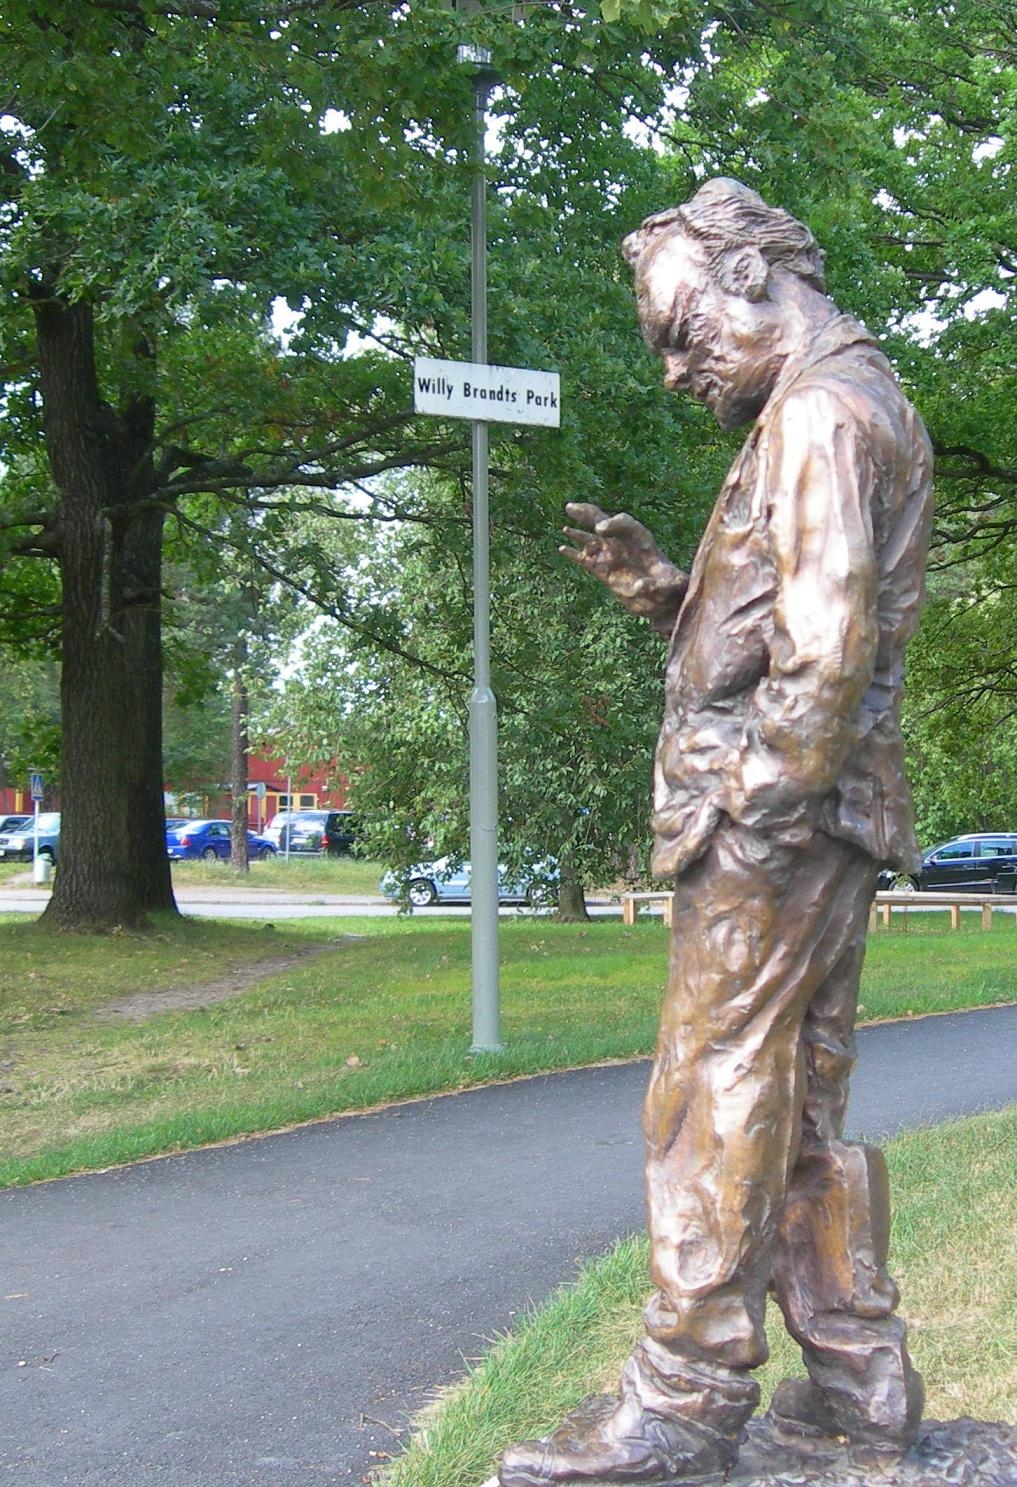 Seltenes Beispiel für sozialdemokratische Erinnerungskultur im ehemaligen Exil: Auf Initiative der schwedischen Sozialdemokraten wurde 2007 eine Kopie der Willy-Brandt-Skulptur aus der SPD-Zentrale in Berlin angefertigt und im „Willy Brandts Park“ im Stockholmer Süden aufgestellt; Bildrechte: Vattkoppa, Wikimedia Commons